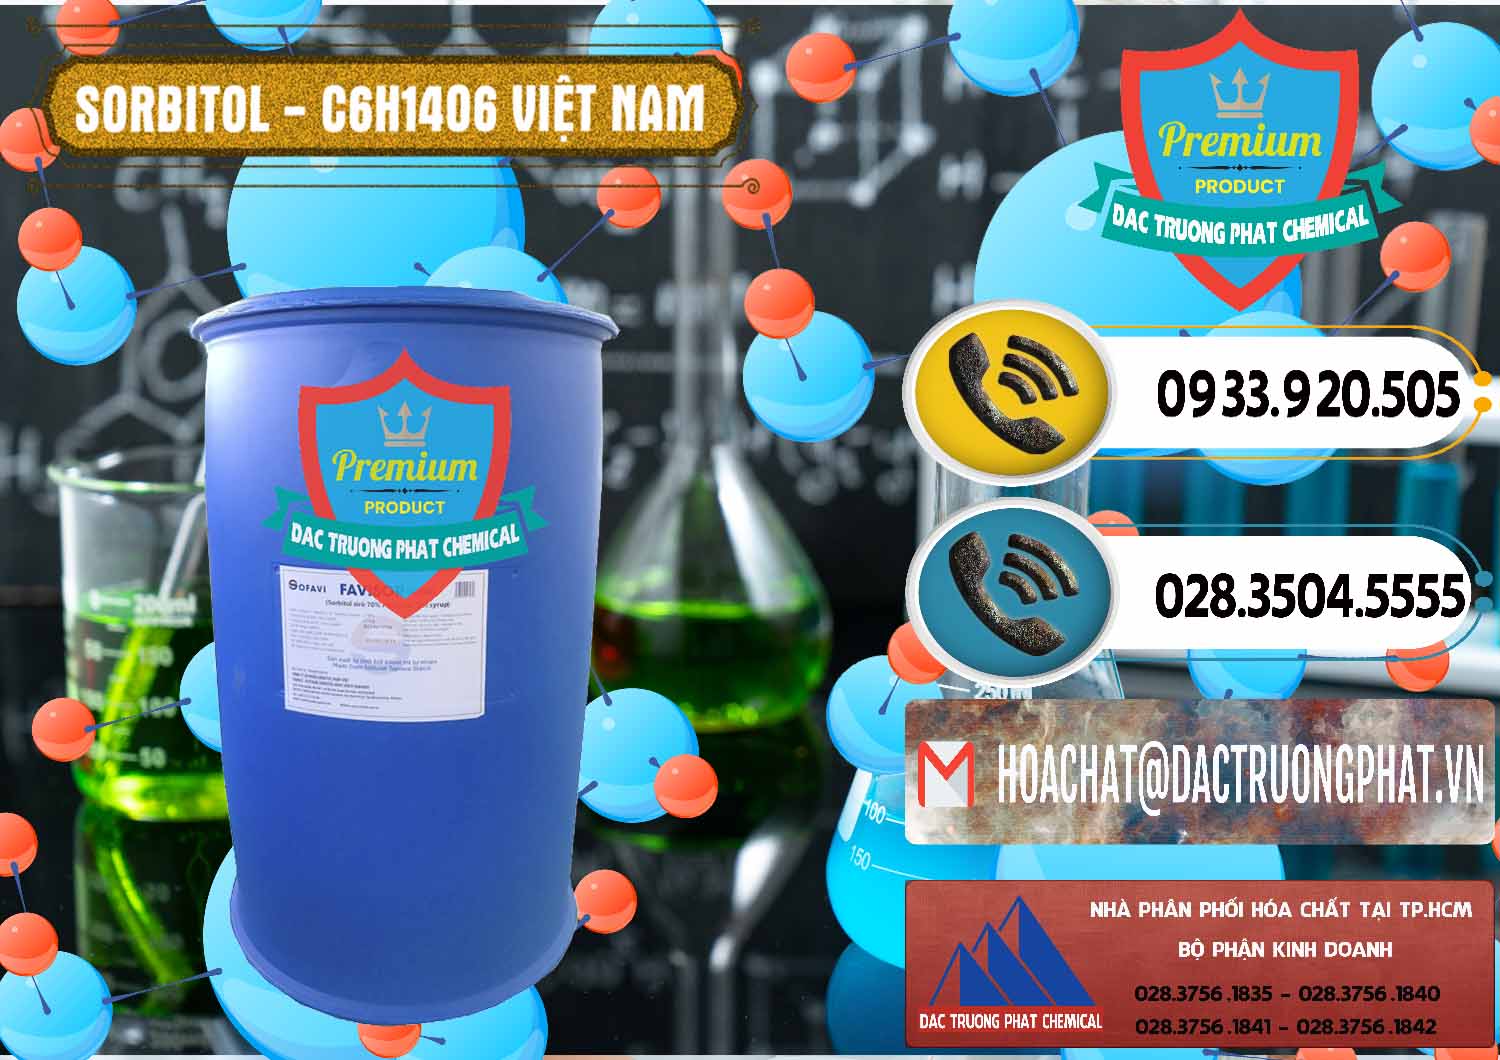 Chuyên bán _ cung ứng Sorbitol - C6H14O6 Lỏng 70% Food Grade Việt Nam - 0438 - Đơn vị kinh doanh và bán hóa chất tại TP.HCM - hoachatdetnhuom.vn